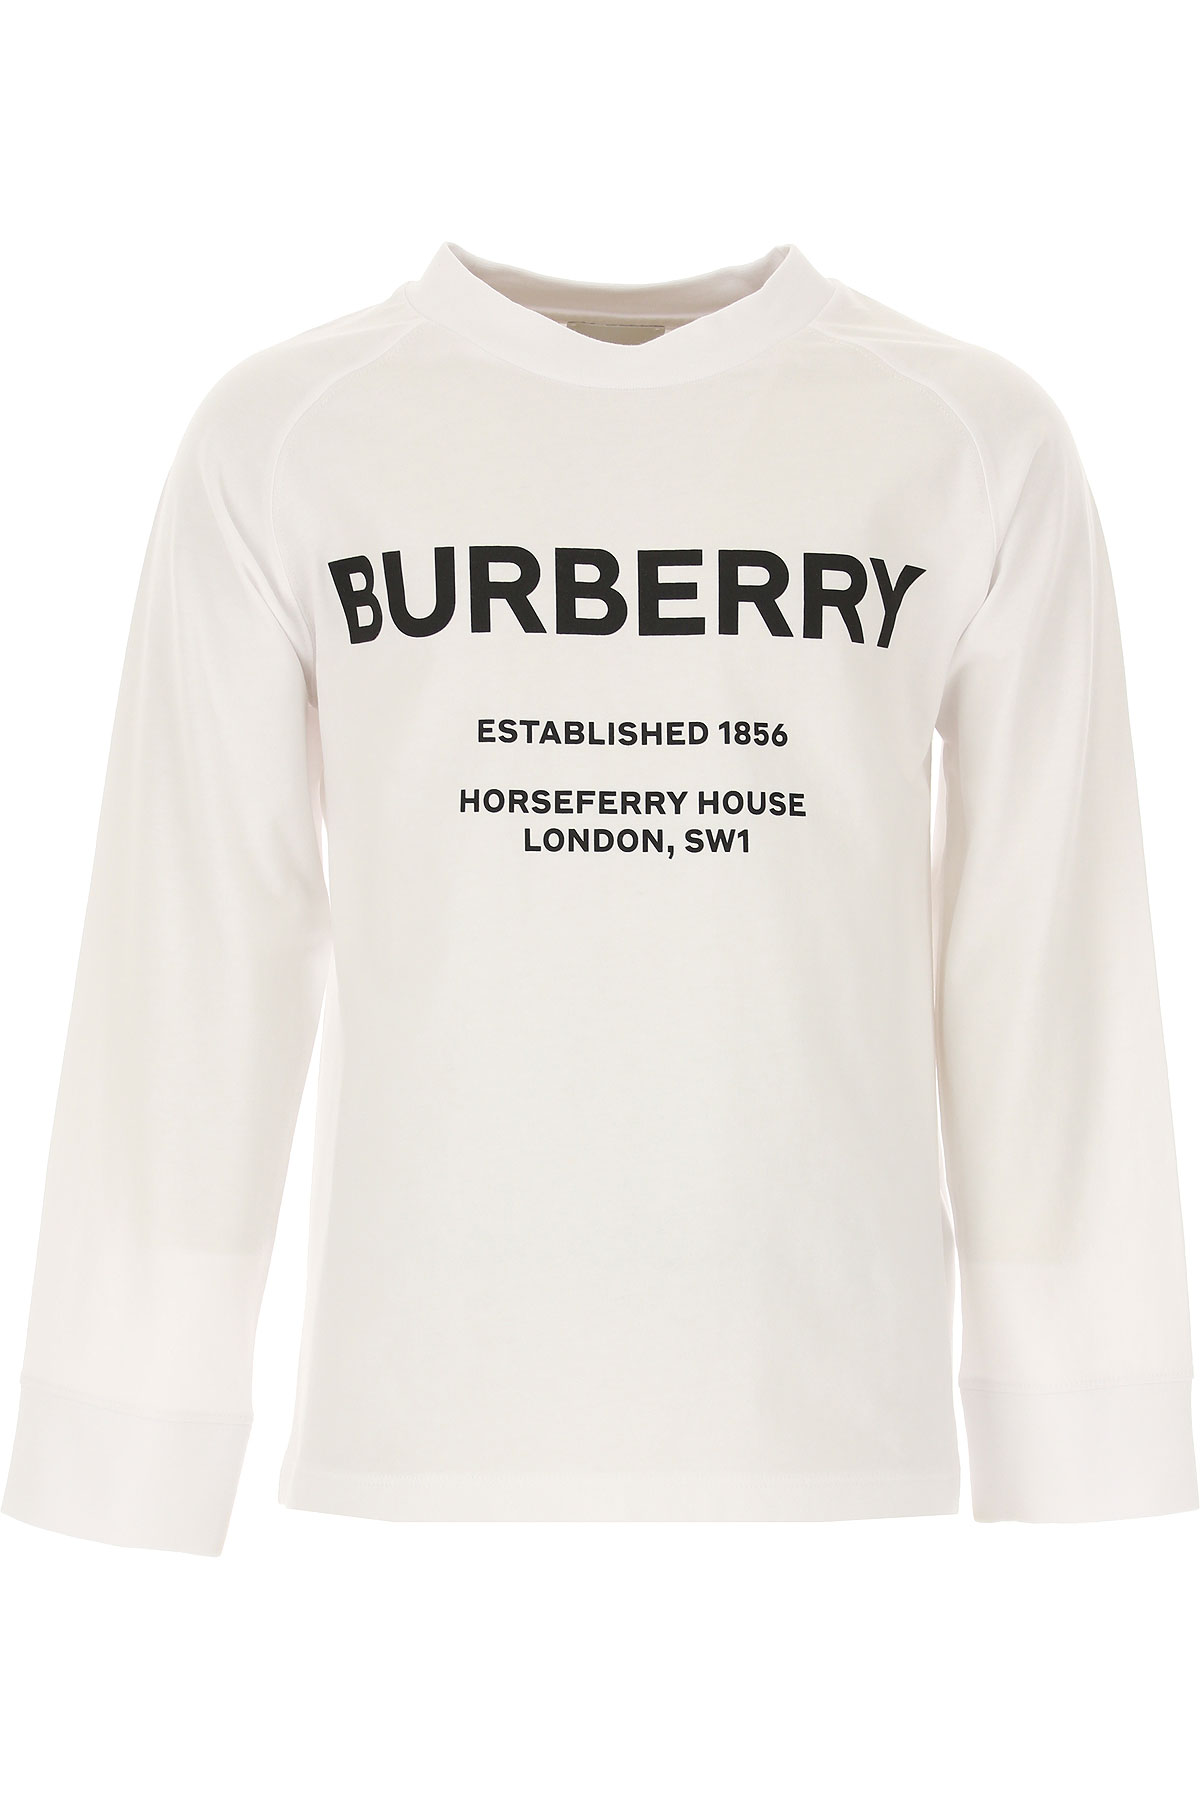 Burberry Kinder T-Shirt für Jungen Günstig im Sale, Weiss, Baumwolle, 2017, 3Y 6Y